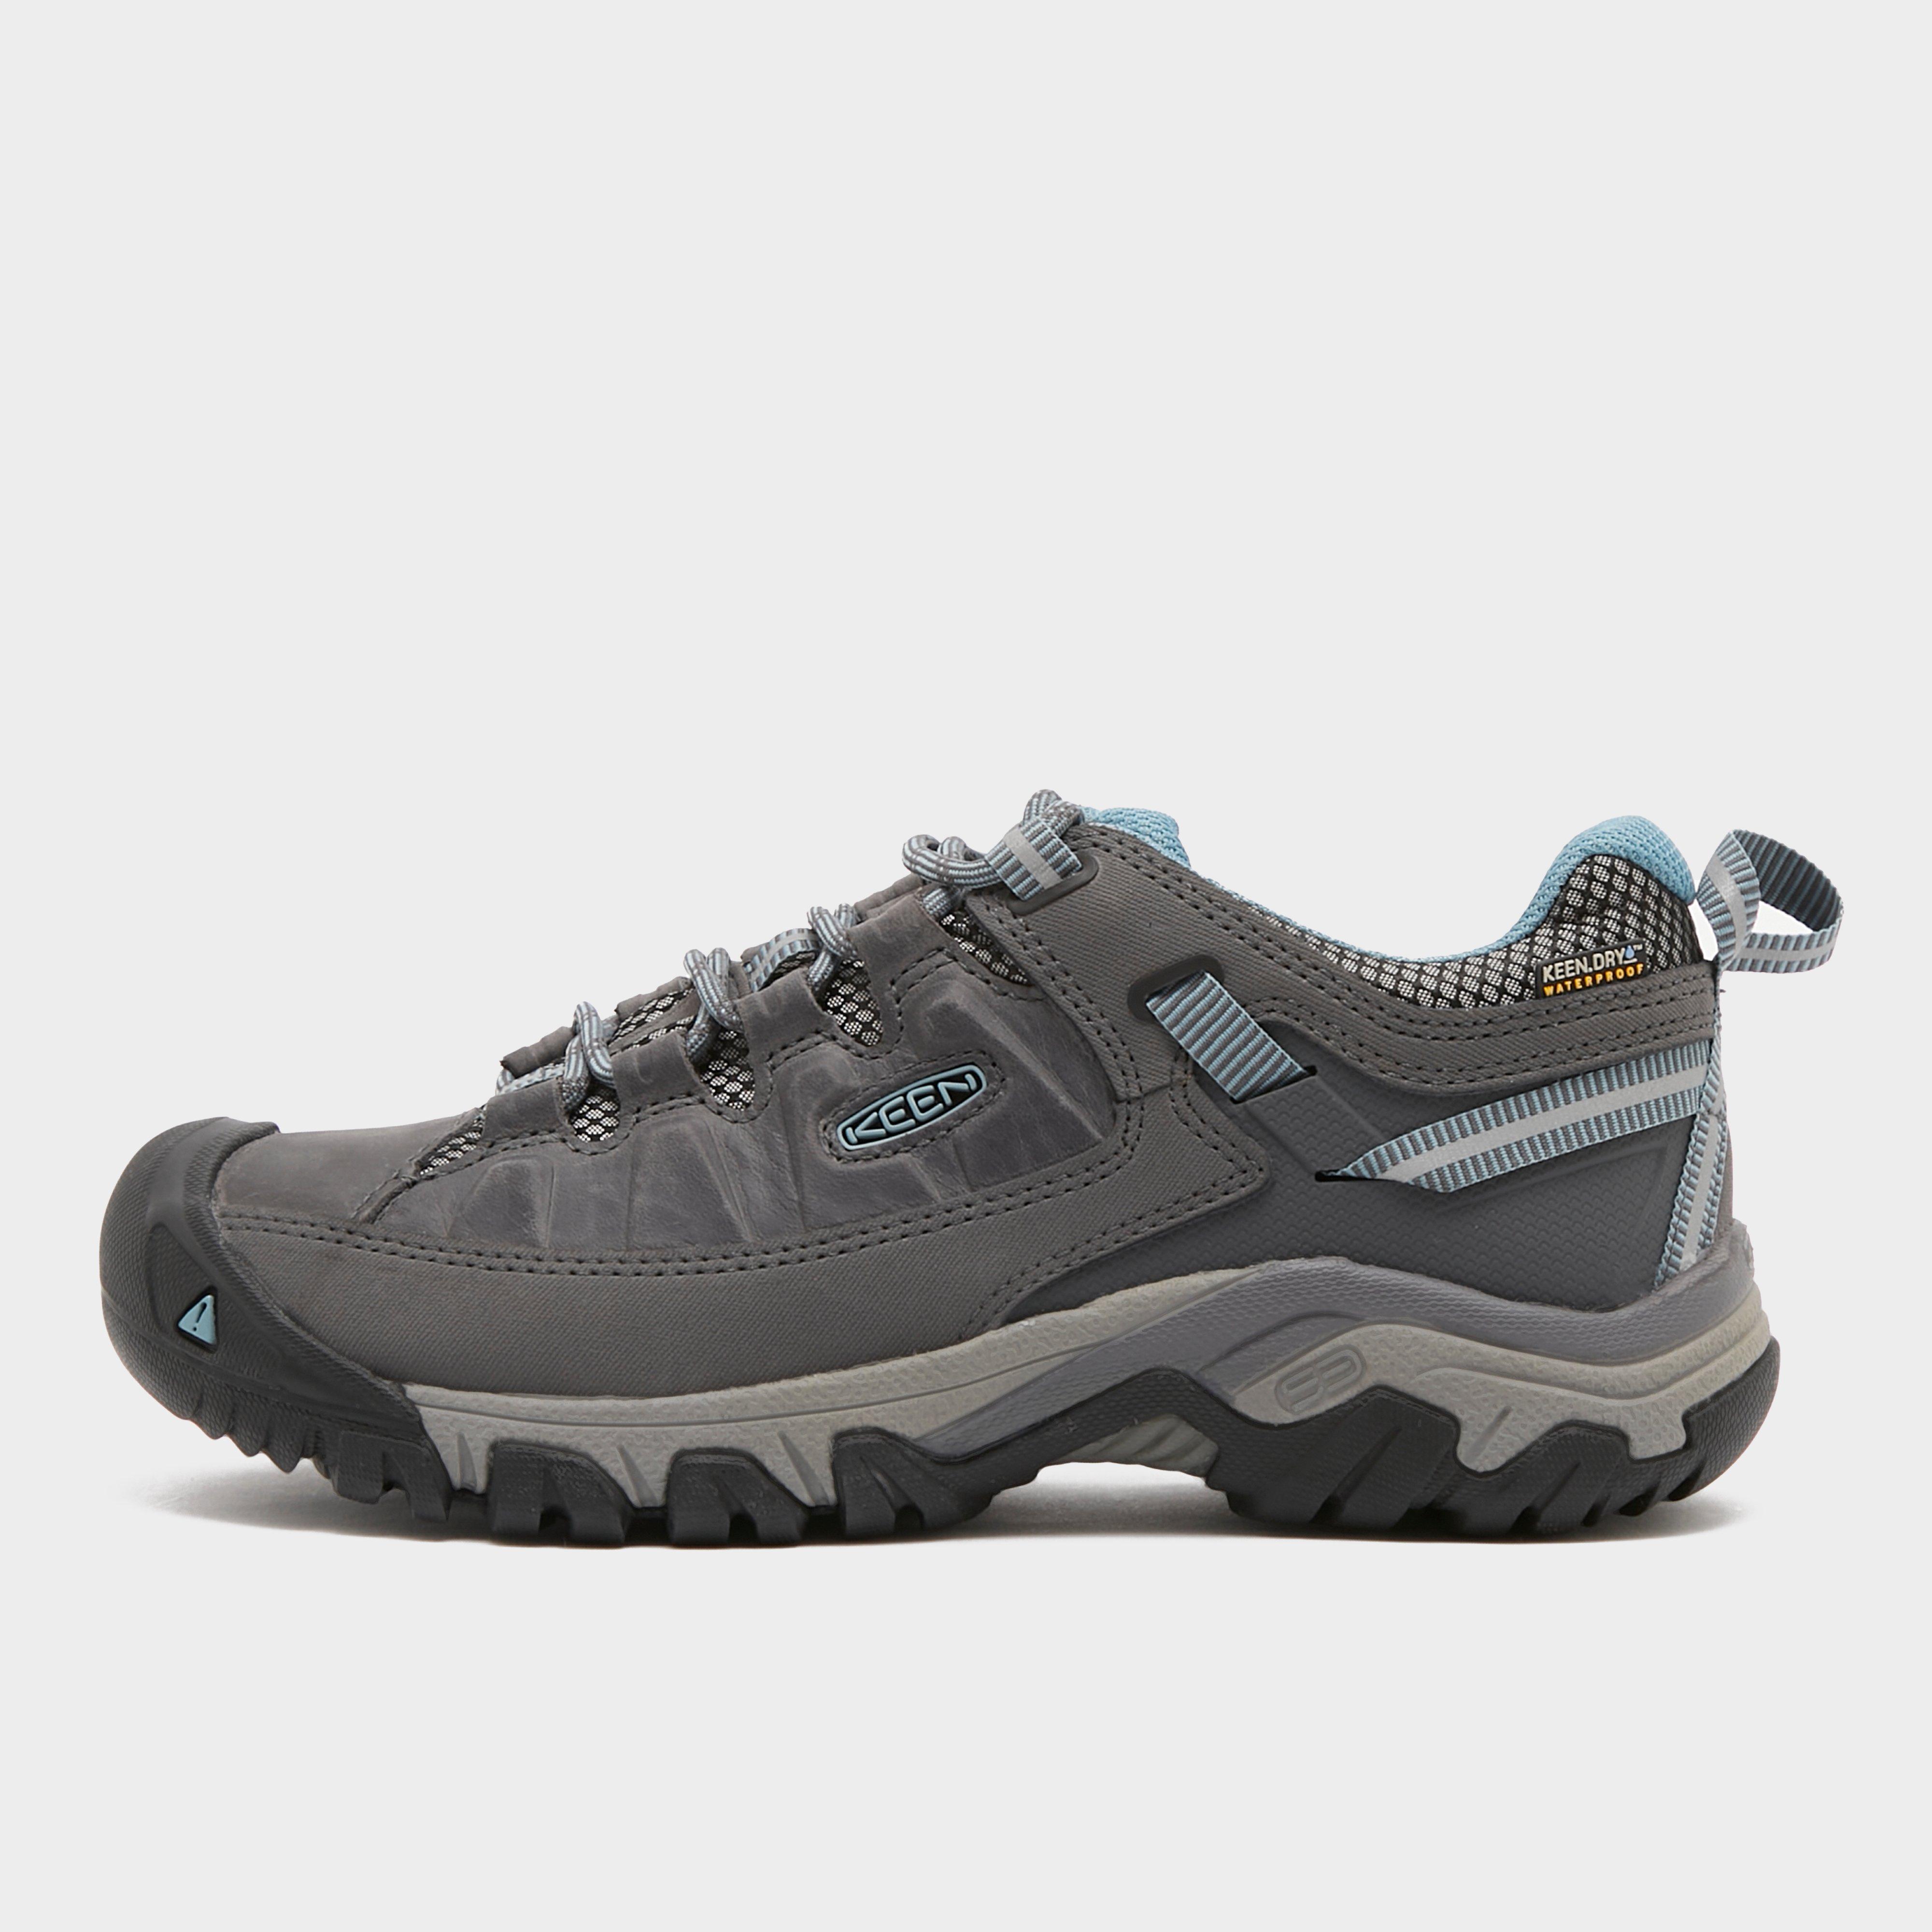 Keen Womens Targhee Iii Waterproof Hiking Boots - Grey/grey  Grey/grey